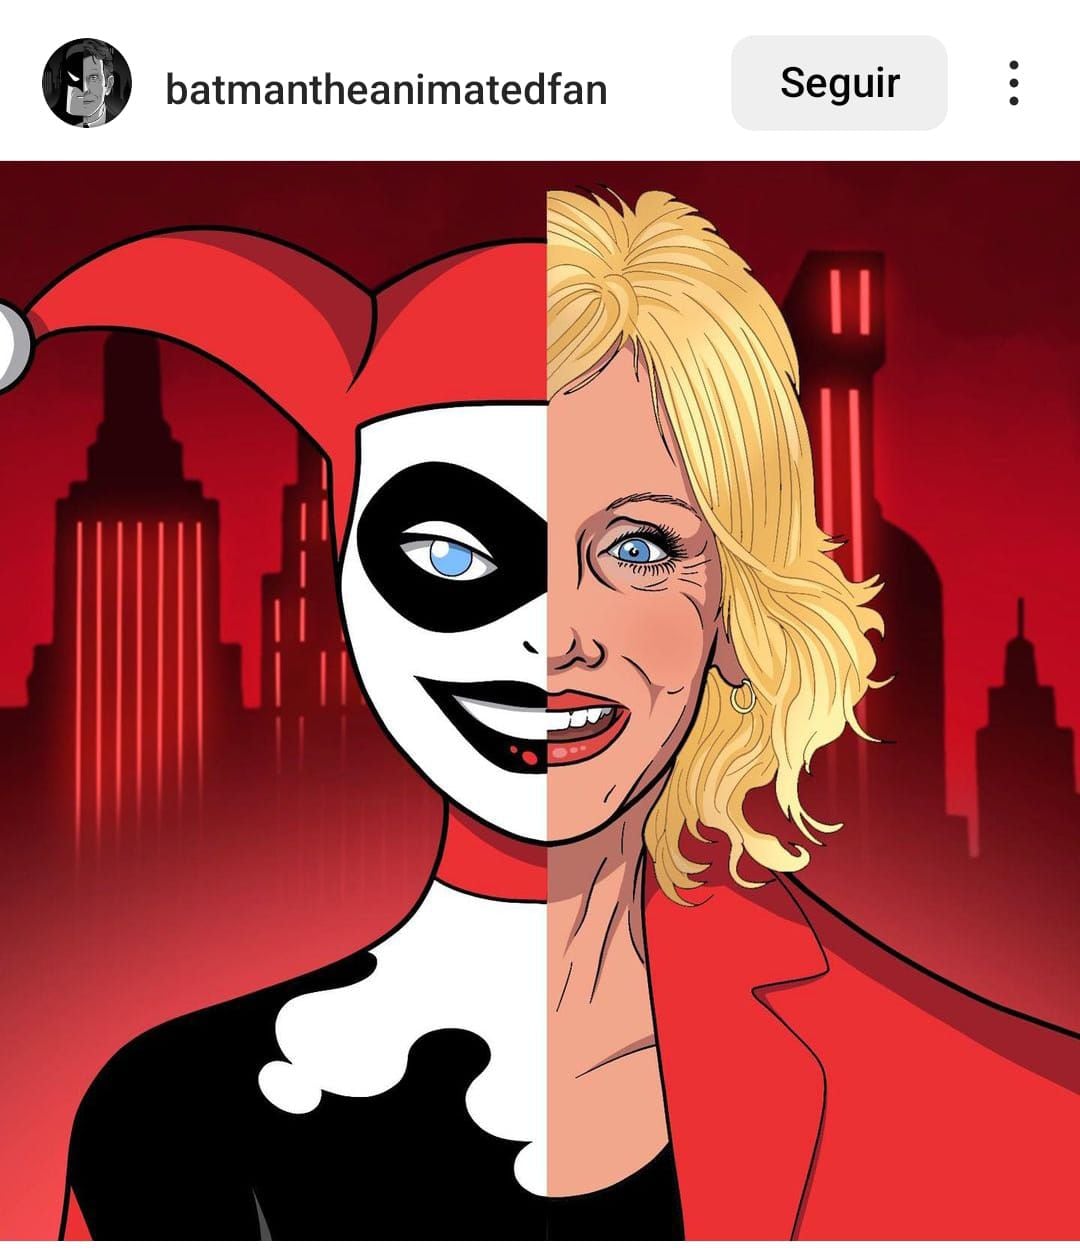 A sus 67 años murió Arleen Sorkin famosa por Batman: The animated series. Foto tomada de la cuenta de Instagram batmantheanimatedfan